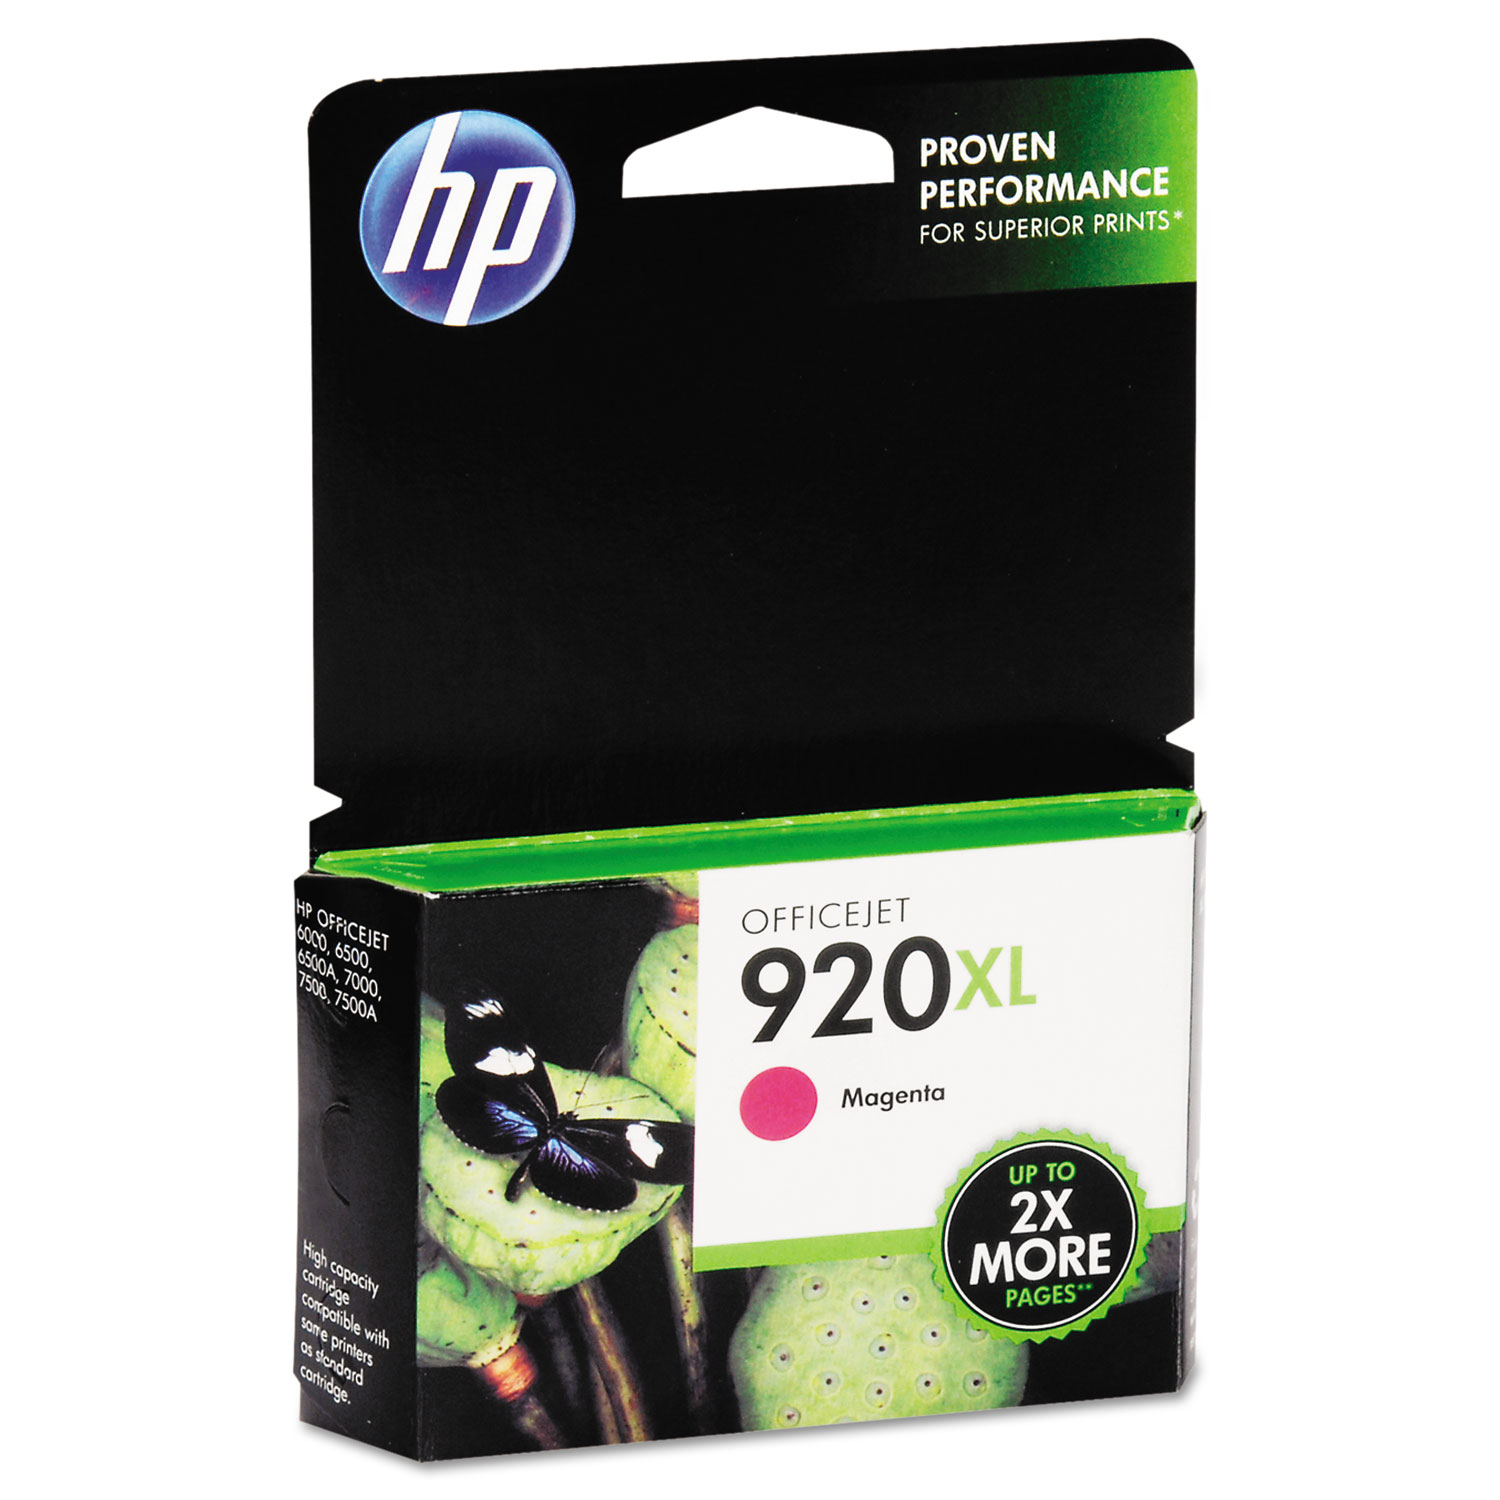  HP CD973AN HP 920XL, (CD973AN) High Yield Magenta Original Ink Cartridge (HEWCD973AN) 